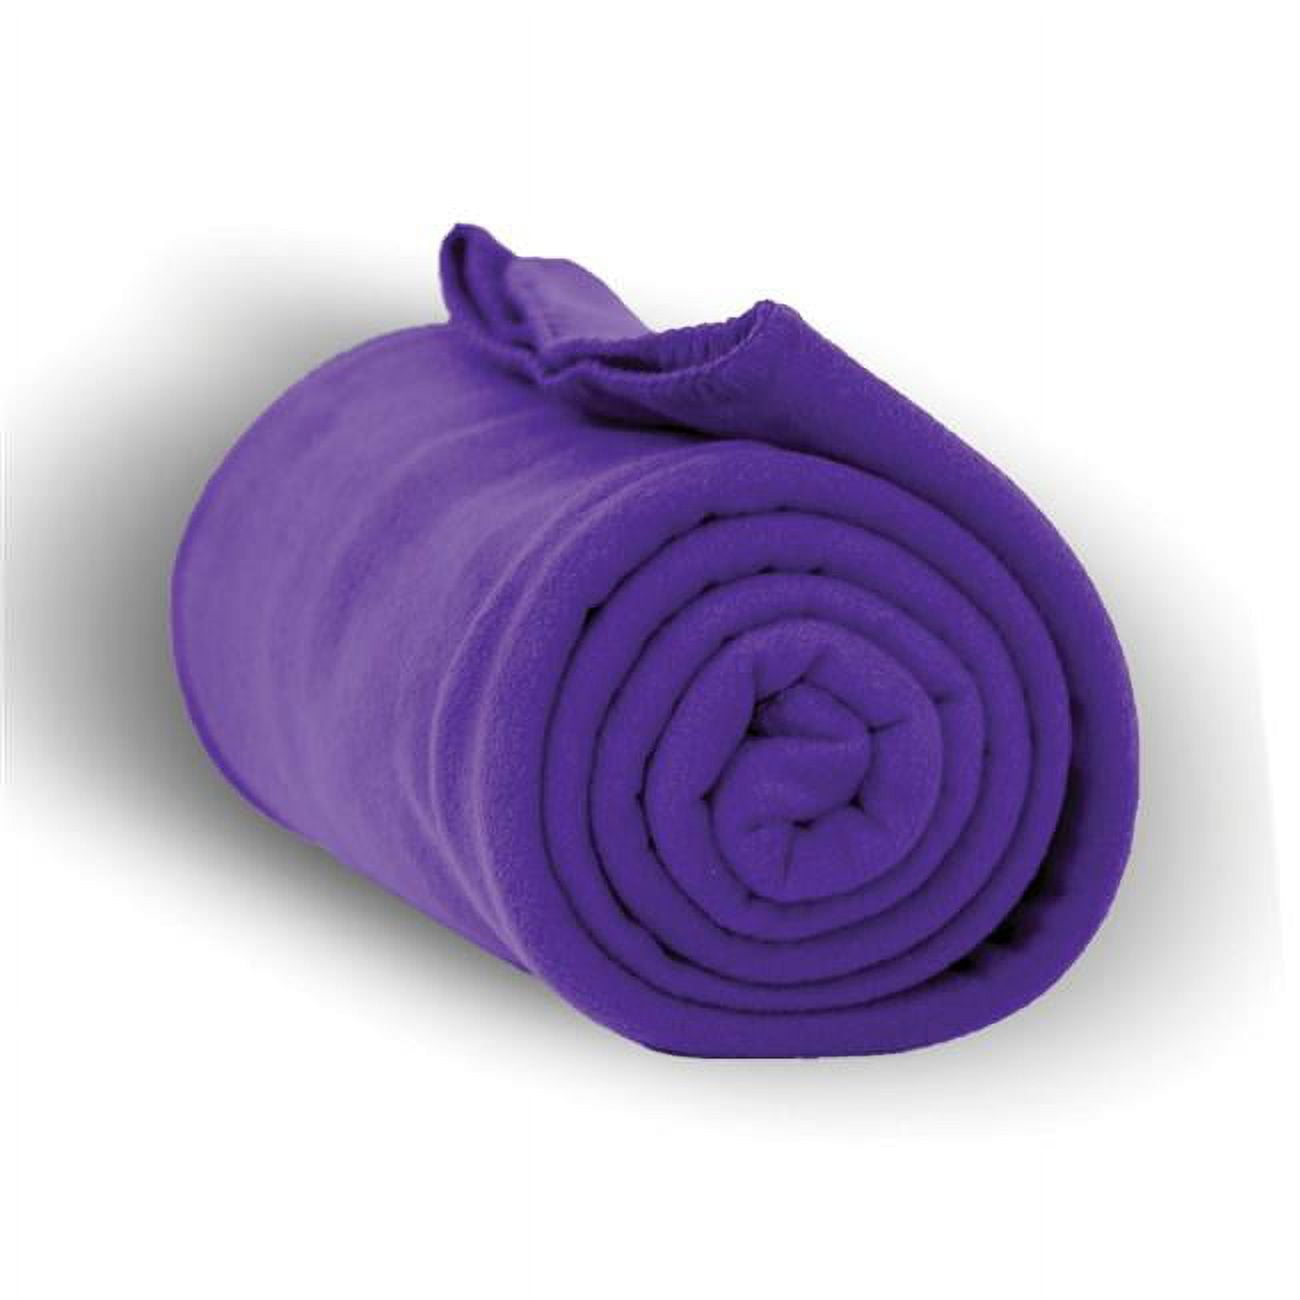 50 X 60 In. Heavy Weight Fleece Blanket Throw - Purple, Case Of 24